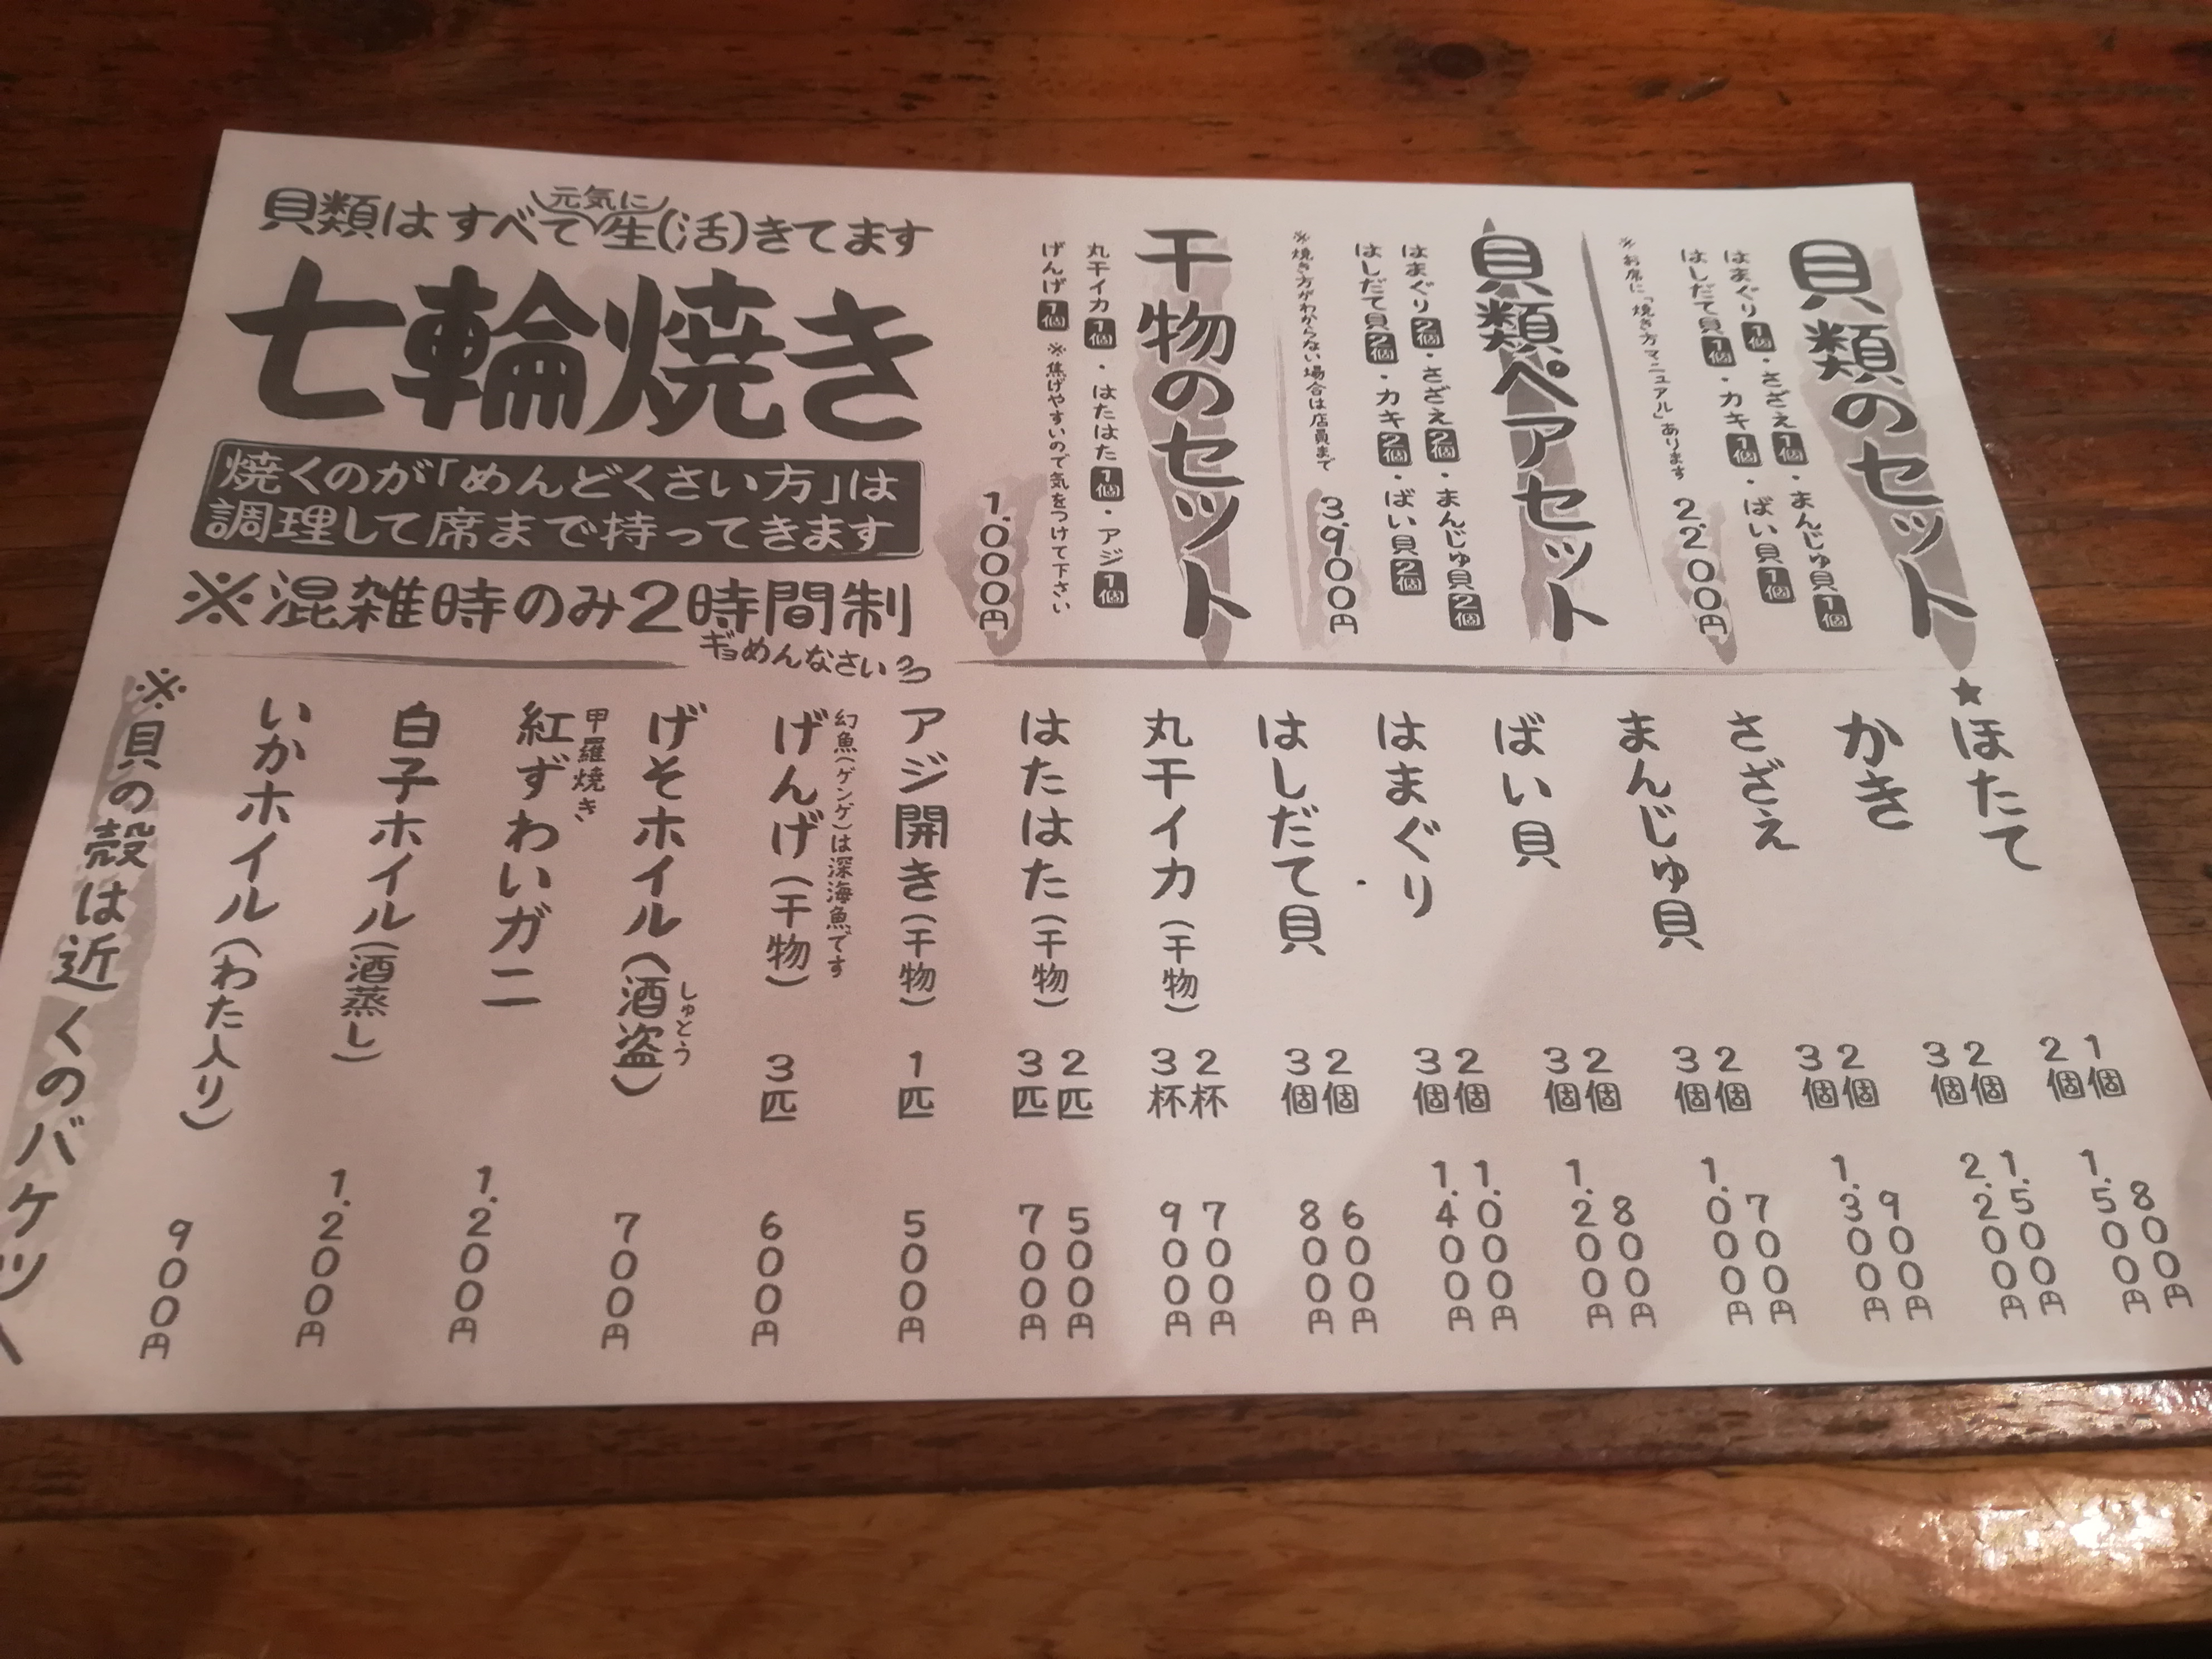 金沢片町の川端鮮魚店は漁師飯のエンターテイメント。ぜひ七輪焼きを注文して‼